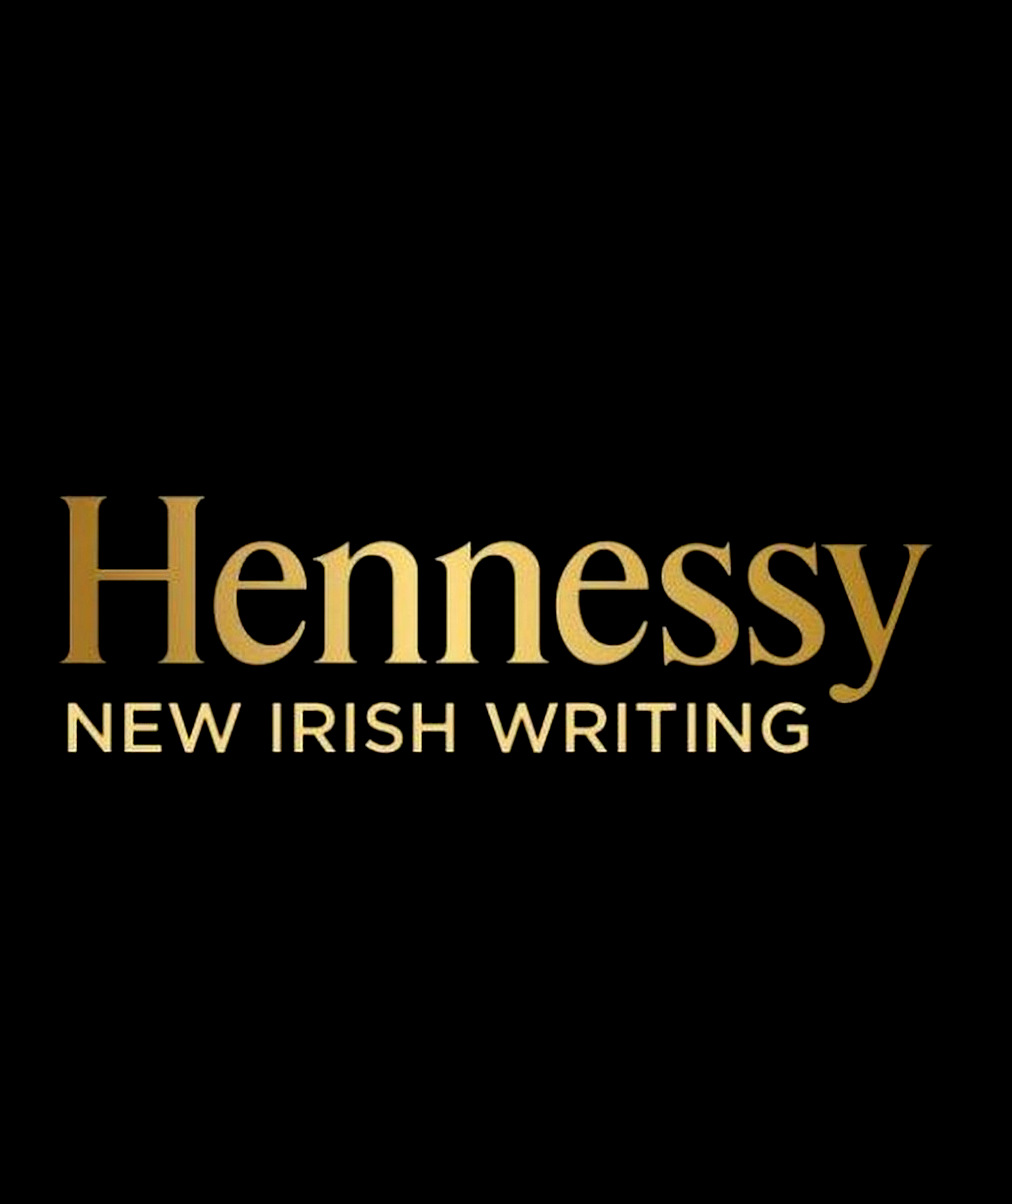 Hennessy New Irish Writing Logo